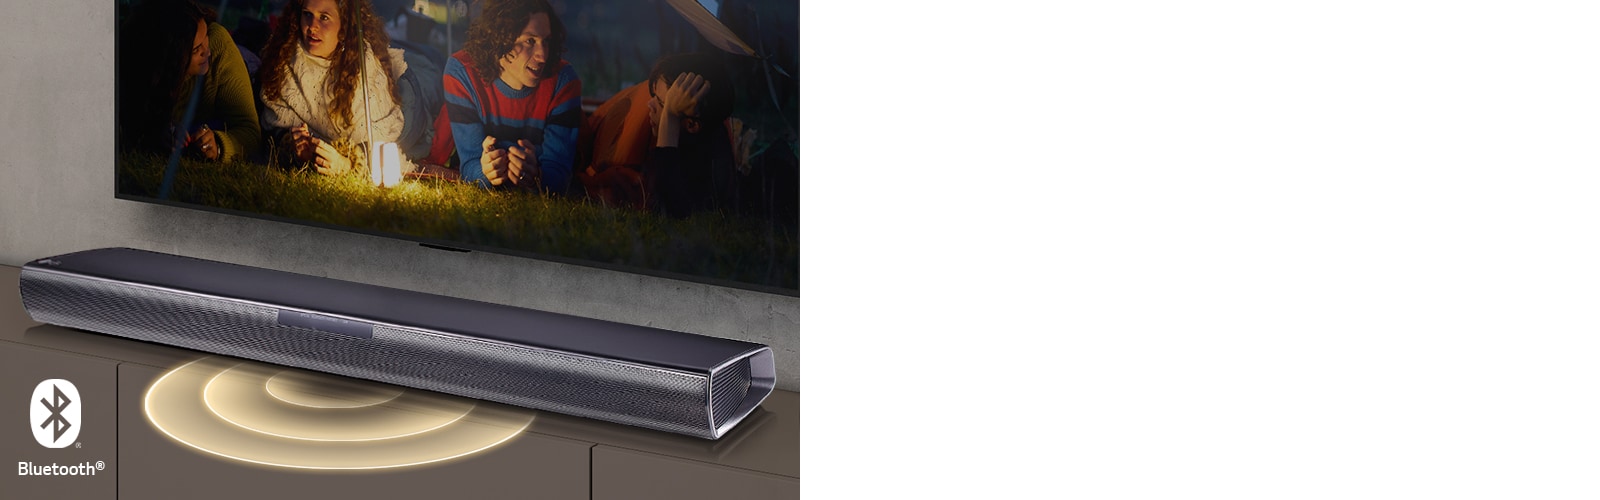 LG TV hænger på væggen, og på skærmen viser det 2 par liggende på græsset. Foran dem er der en lampe. En LG Soundbar er under et LG TV. Lydgrafik kommer ud fra forsiden af soundbaren. Bluetooth-logoet vises i nederste venstre hjørne af billedet.